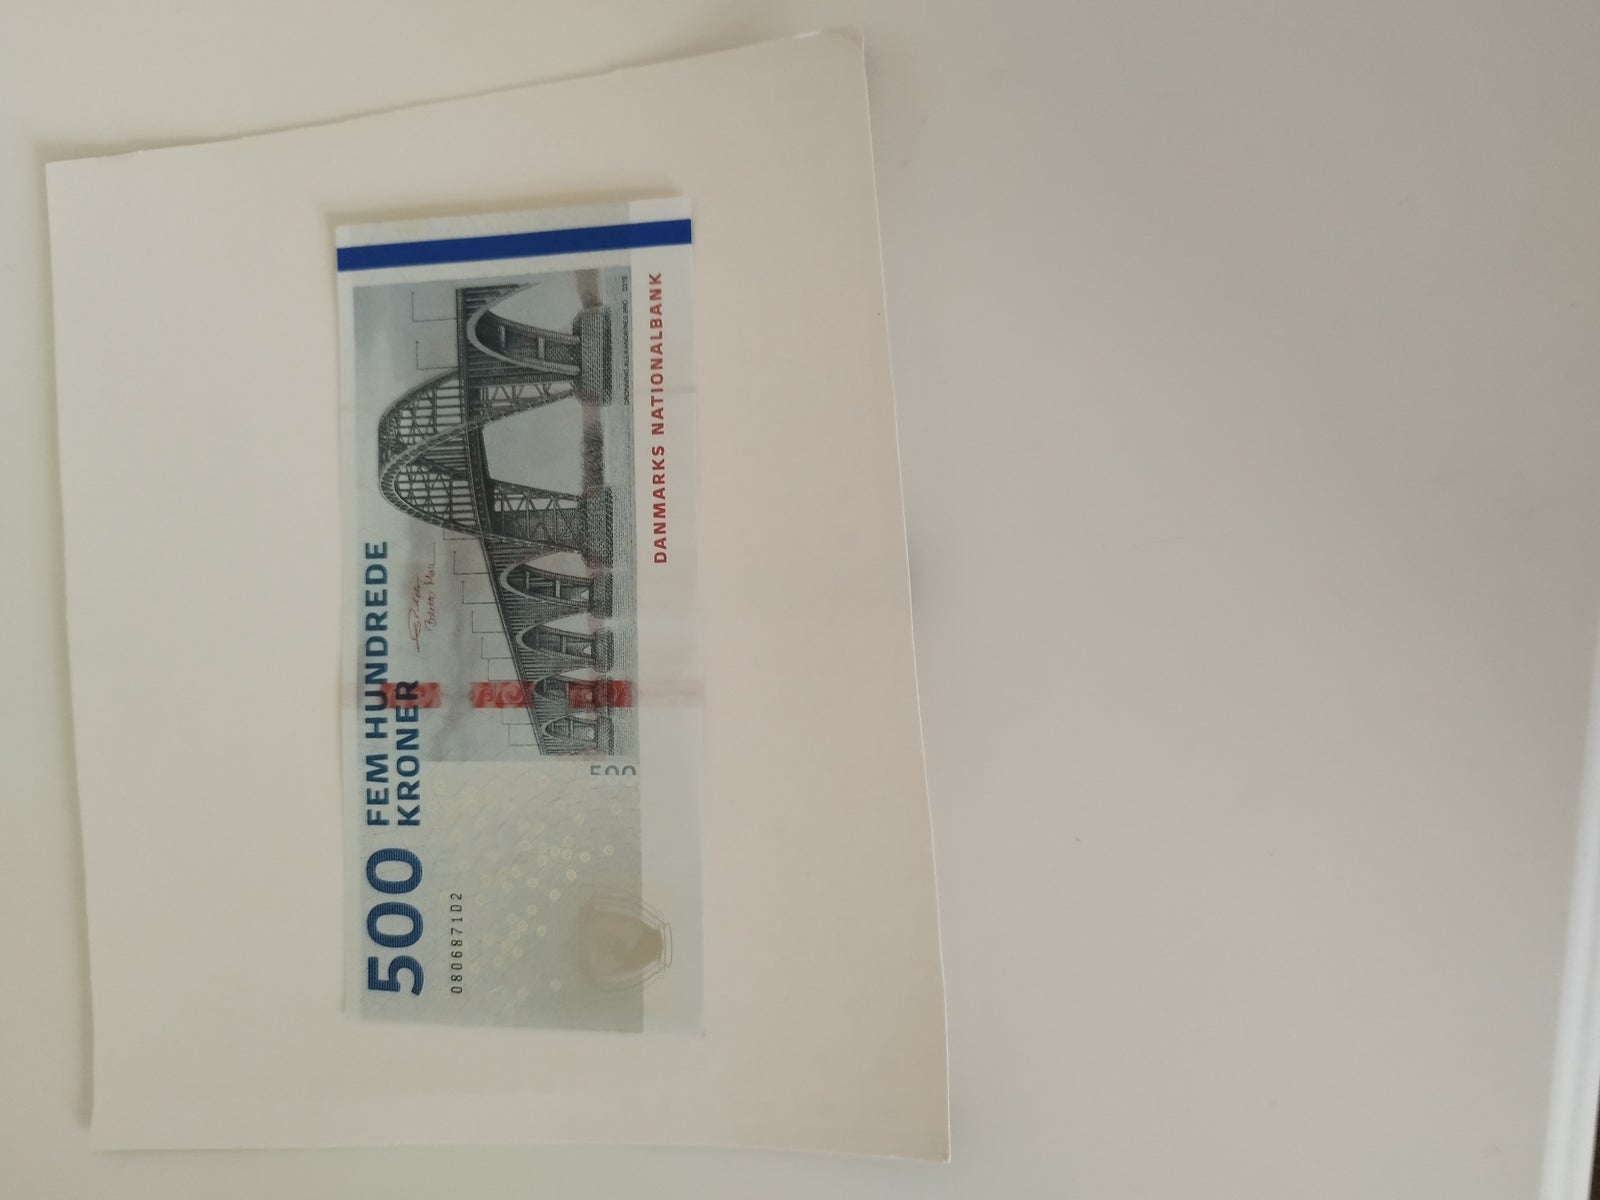 Danmark, sedler, 500